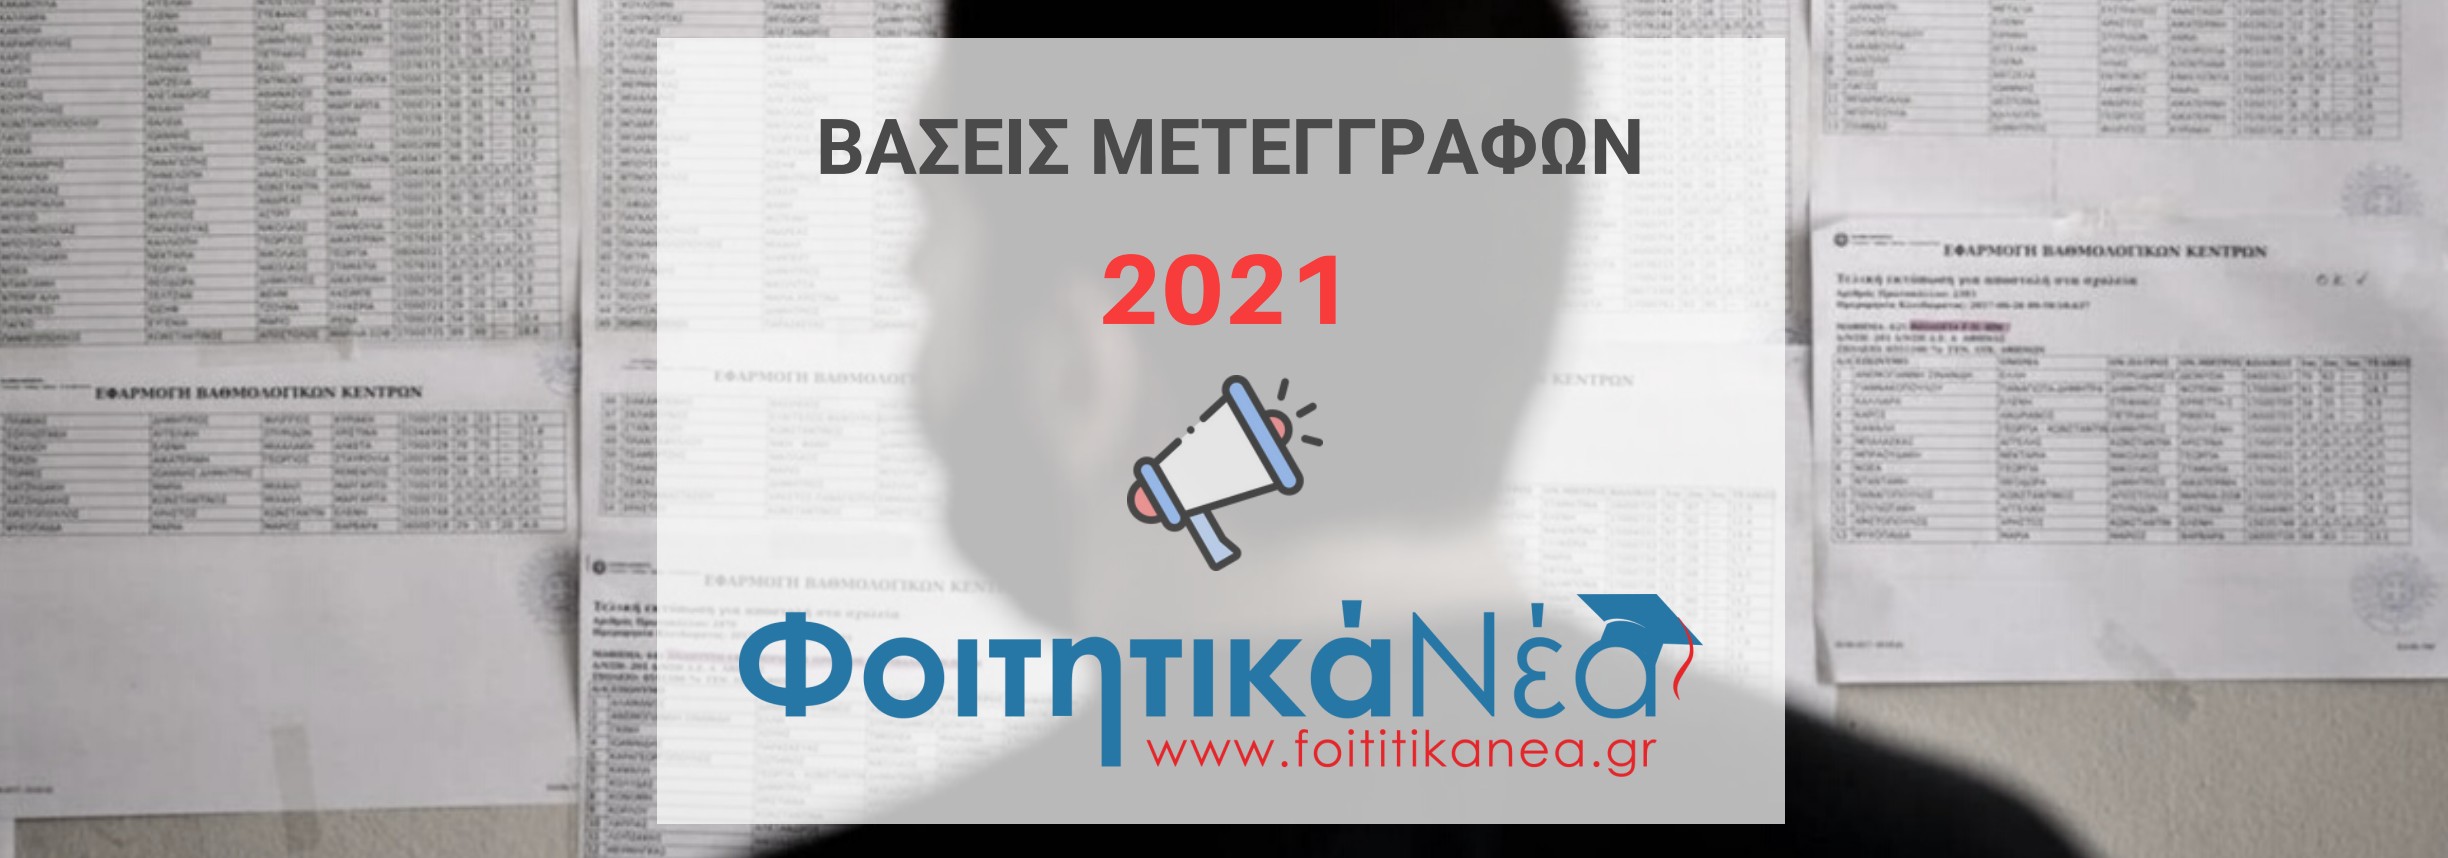 ΒΑΣΕΙΣ ΜΕΤΕΓΓΡΑΦΩΝ 2021